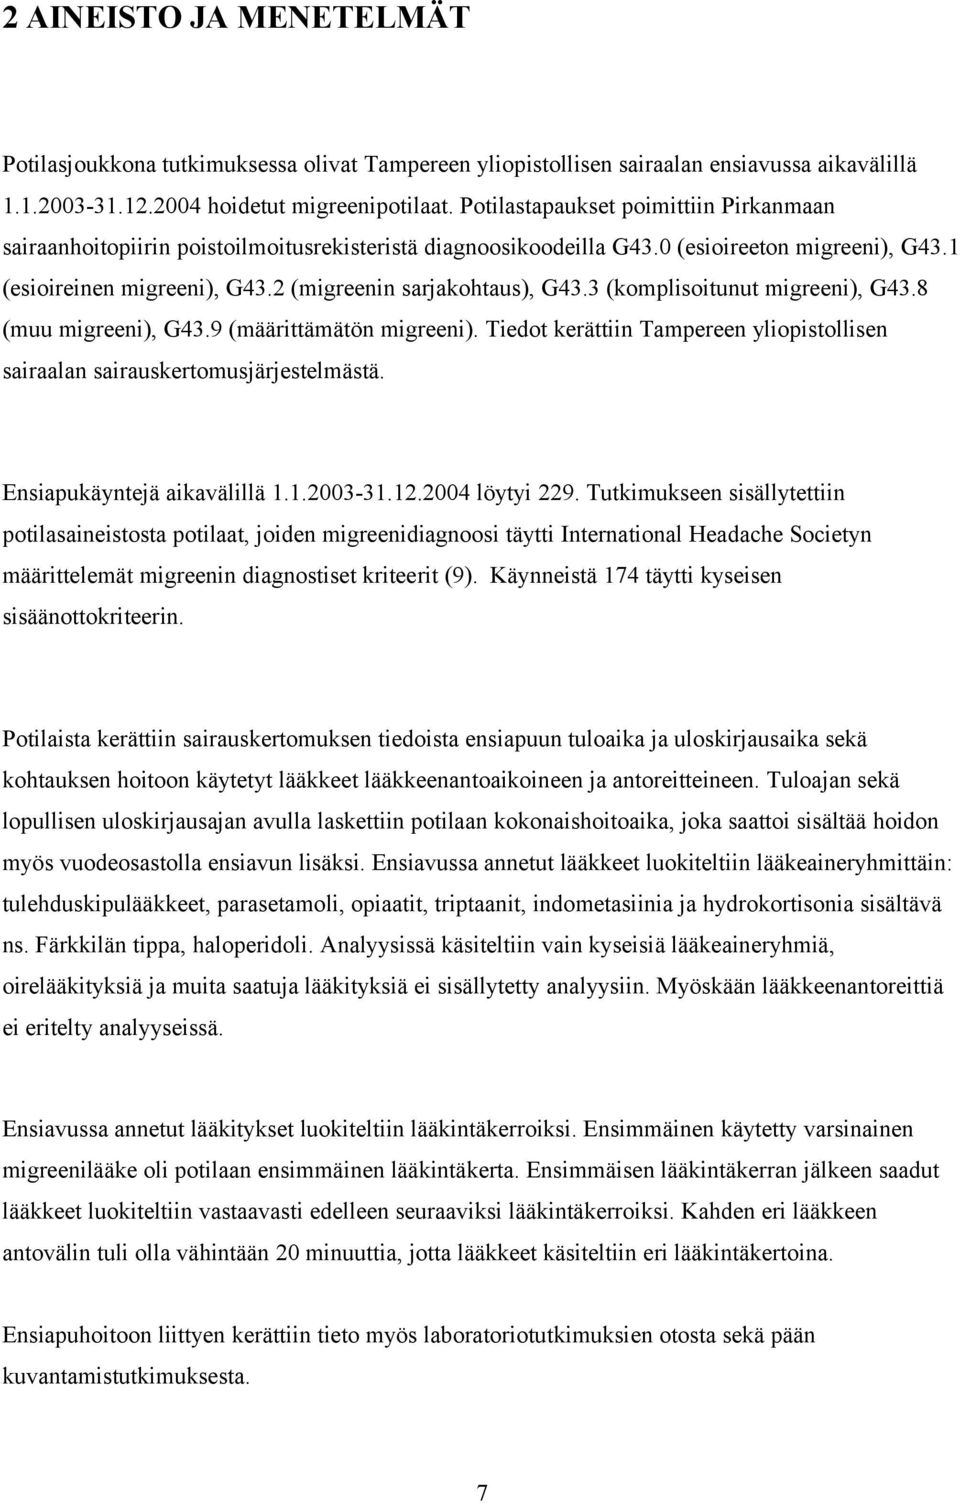 3 (komplisoitunut migreeni), G43.8 (muu migreeni), G43.9 (määrittämätön migreeni). Tiedot kerättiin Tampereen yliopistollisen sairaalan sairauskertomusjärjestelmästä. Ensiapukäyntejä aikavälillä 1.